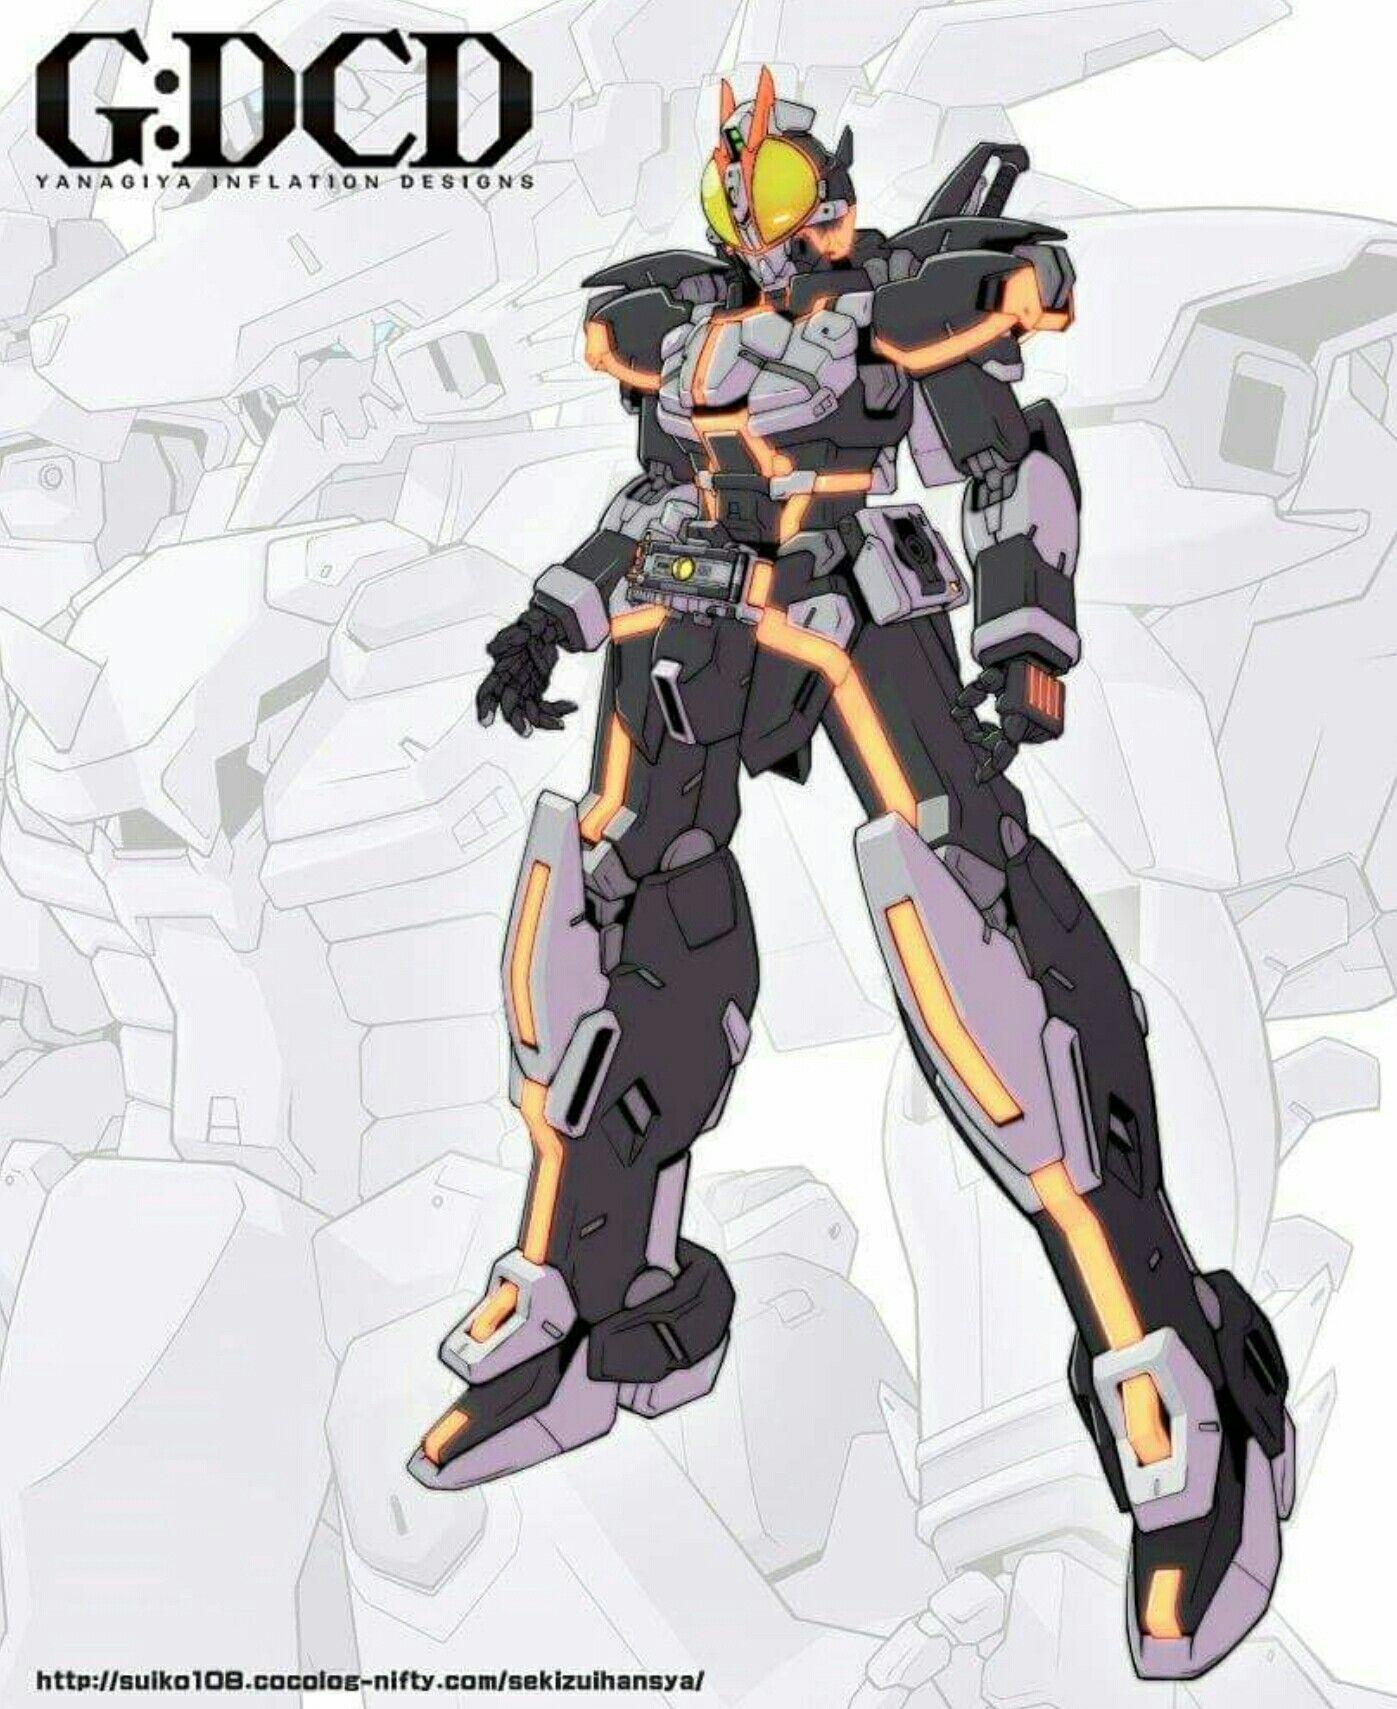 Kamen Rider 555 Faiz #GundamVer. Image. Kamen Rider Faiz, Kamen